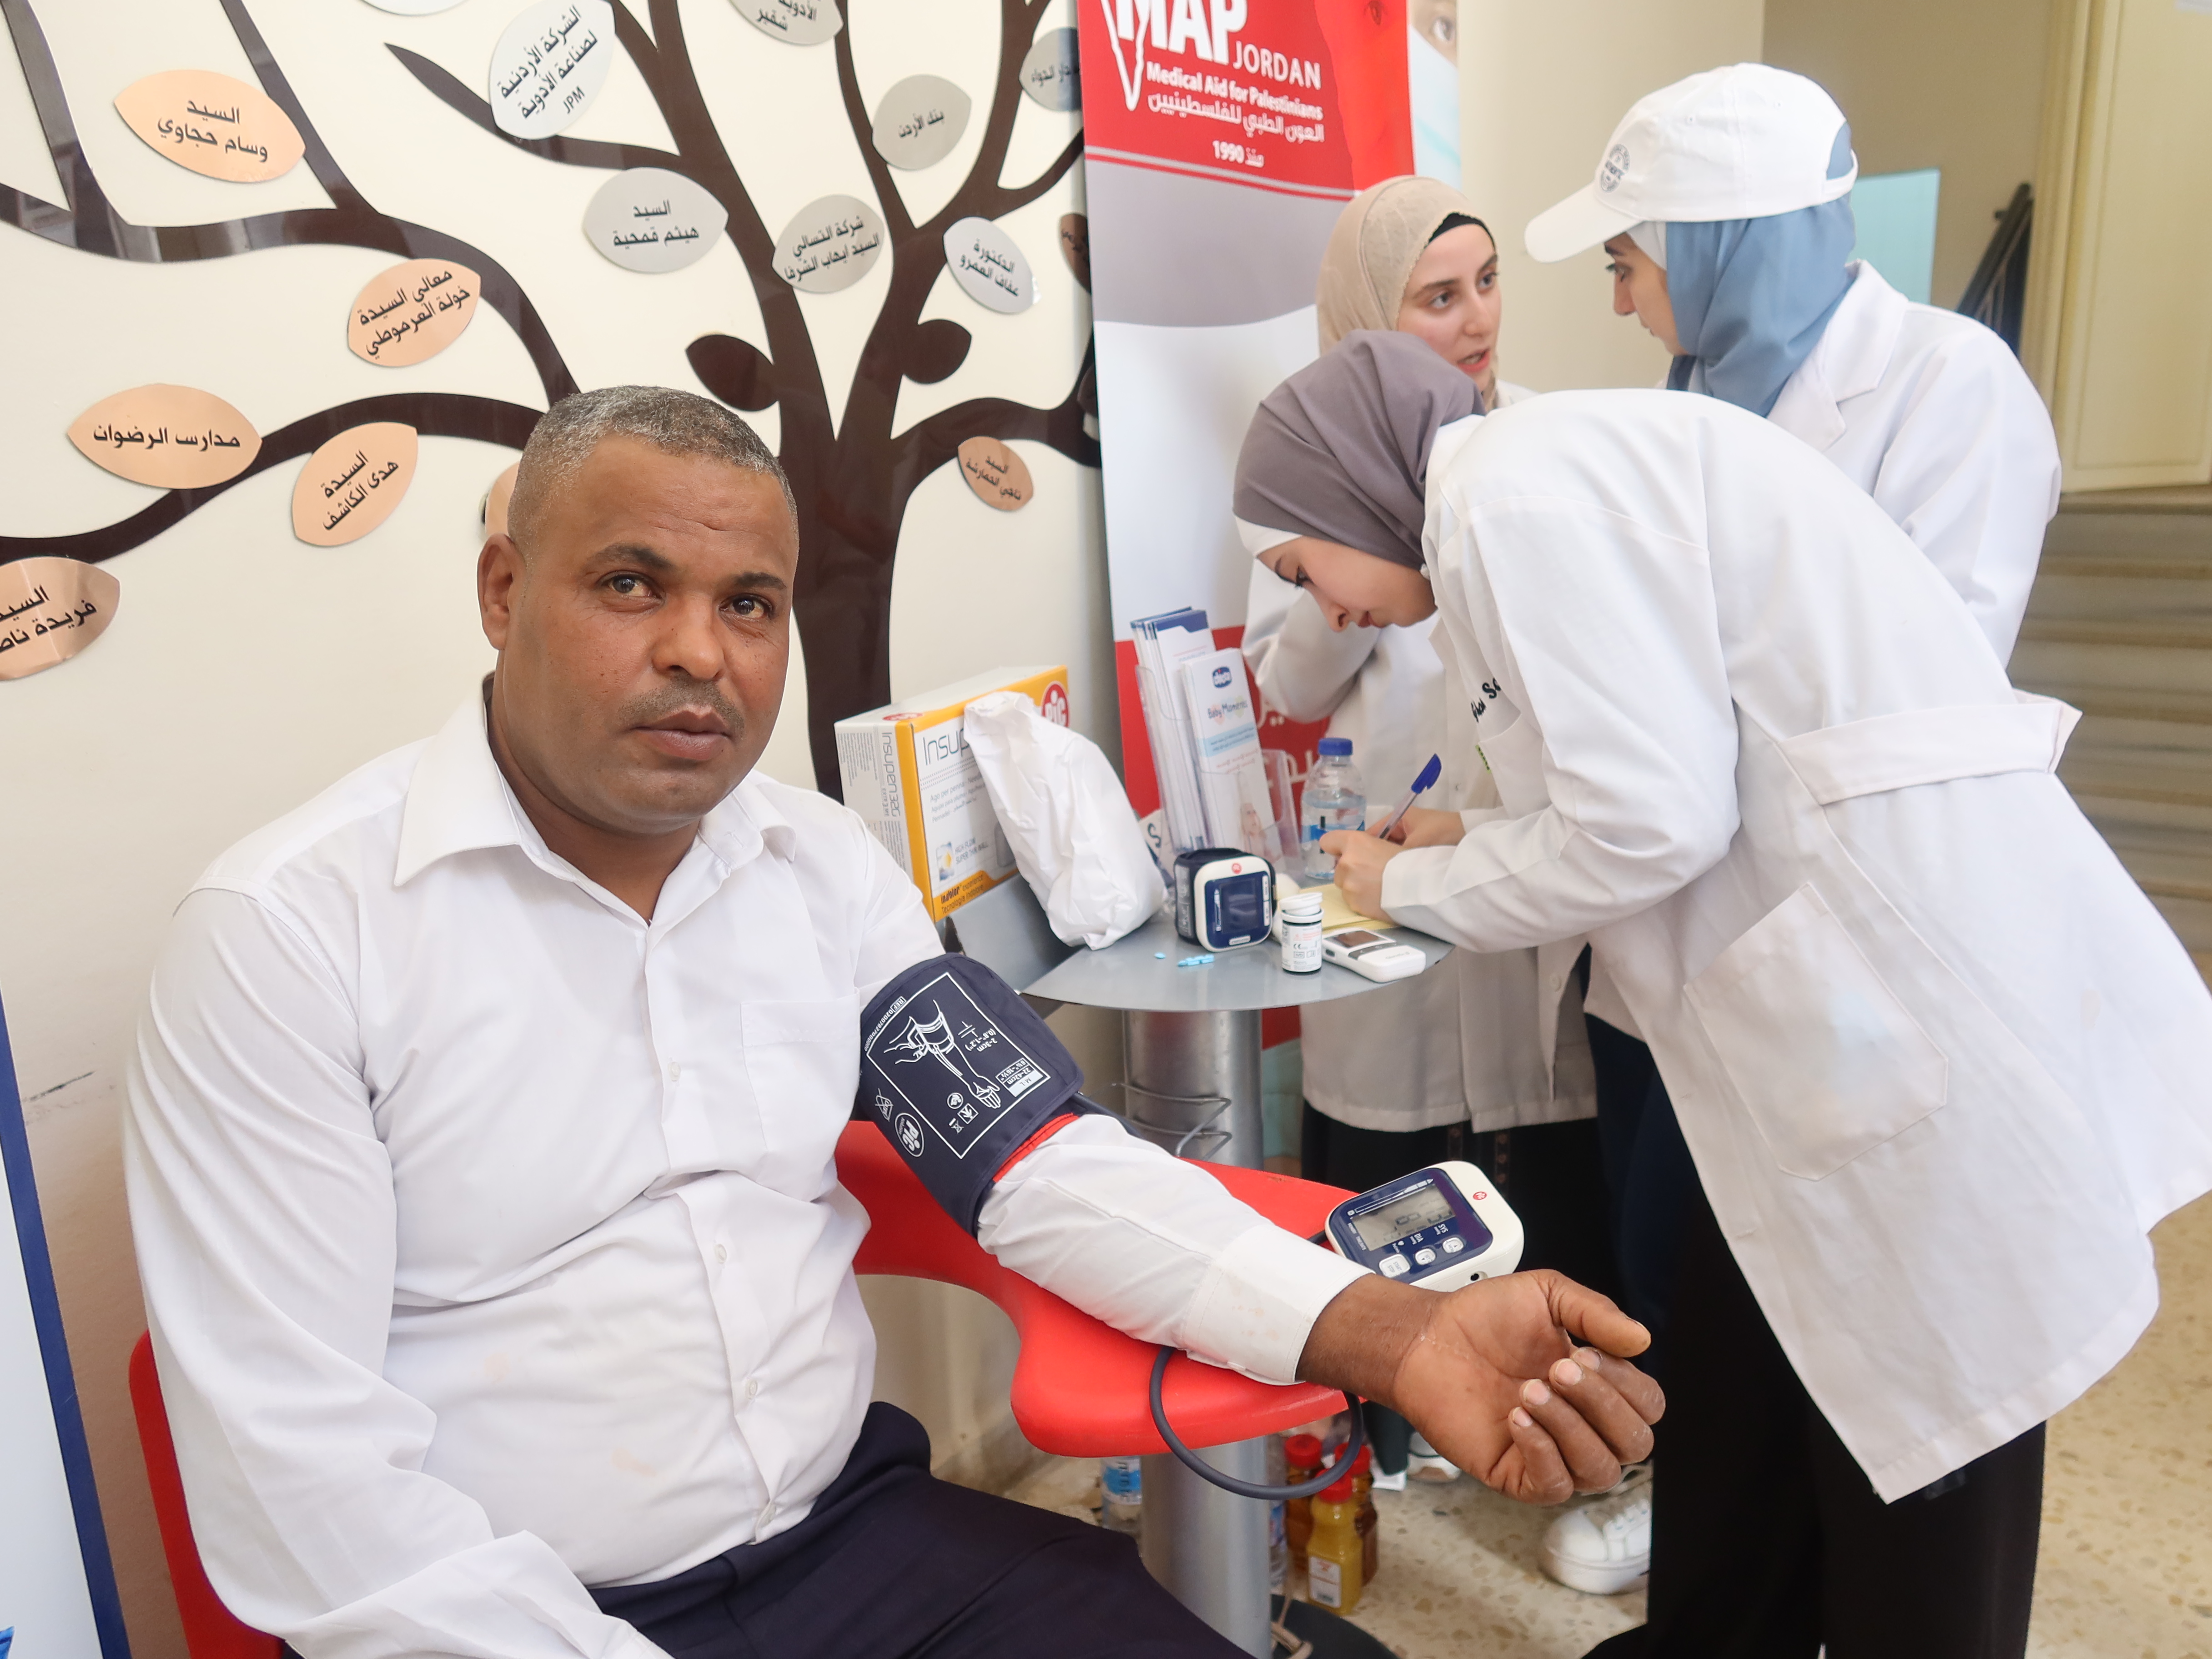 العون الطبي للفلسطينيين تقيم يوم طبي مجاني بالتعاون مع مؤسسة يان وجامعة الشرق الأوسط